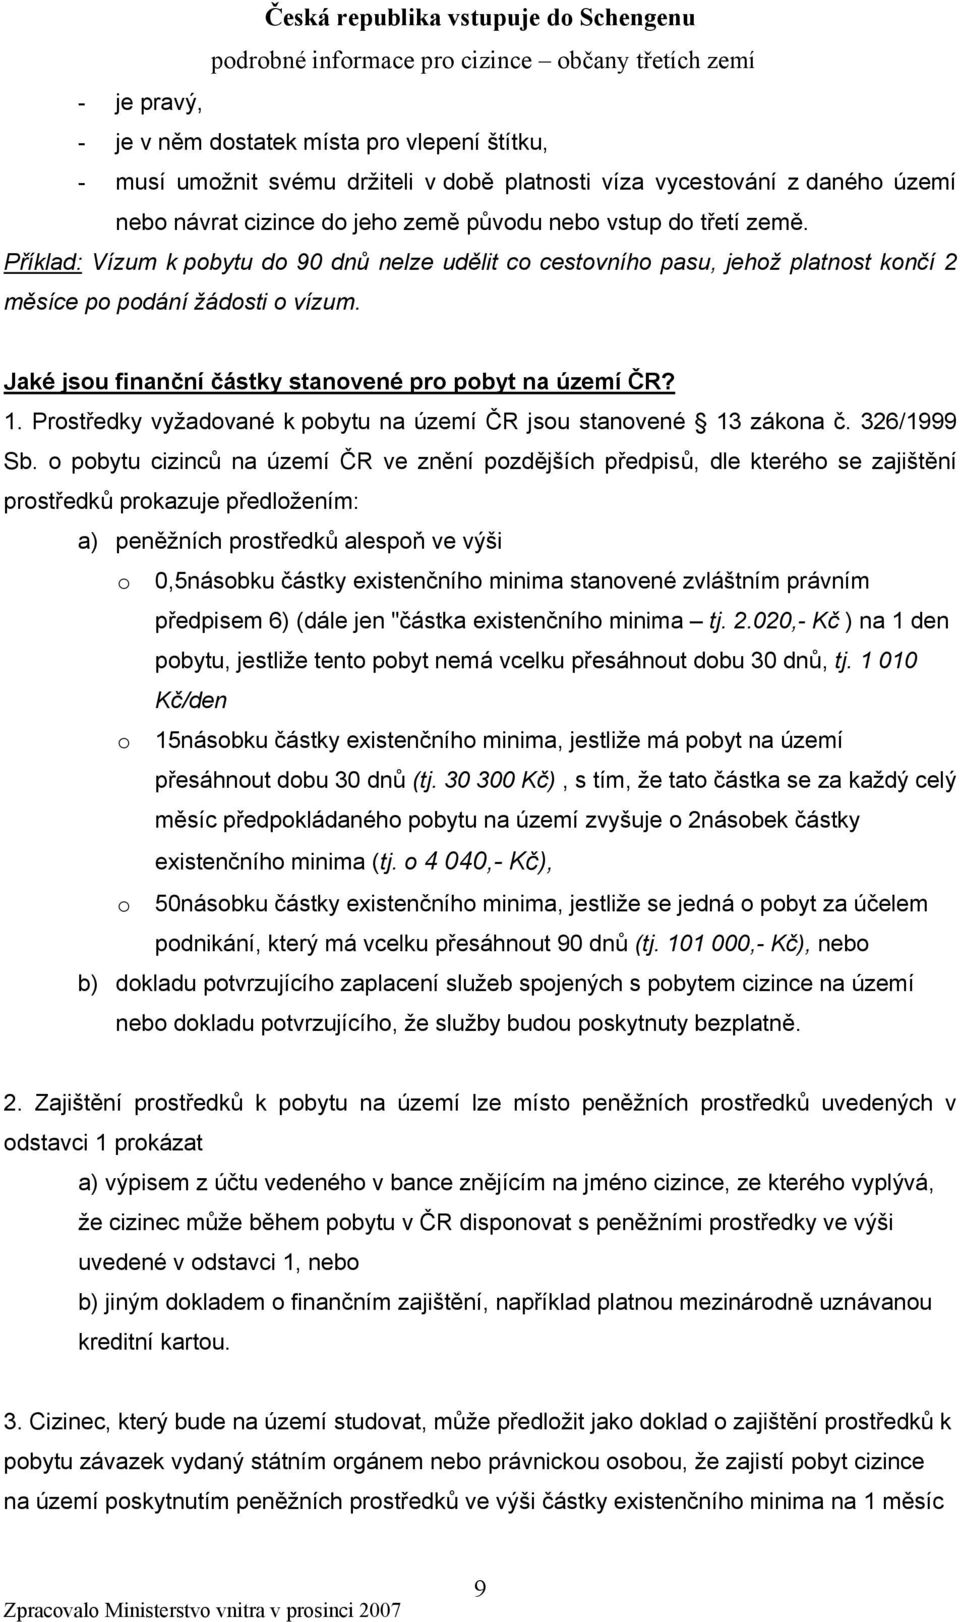 Prostředky vyžadované k pobytu na území ČR jsou stanovené 13 zákona č. 326/1999 Sb.